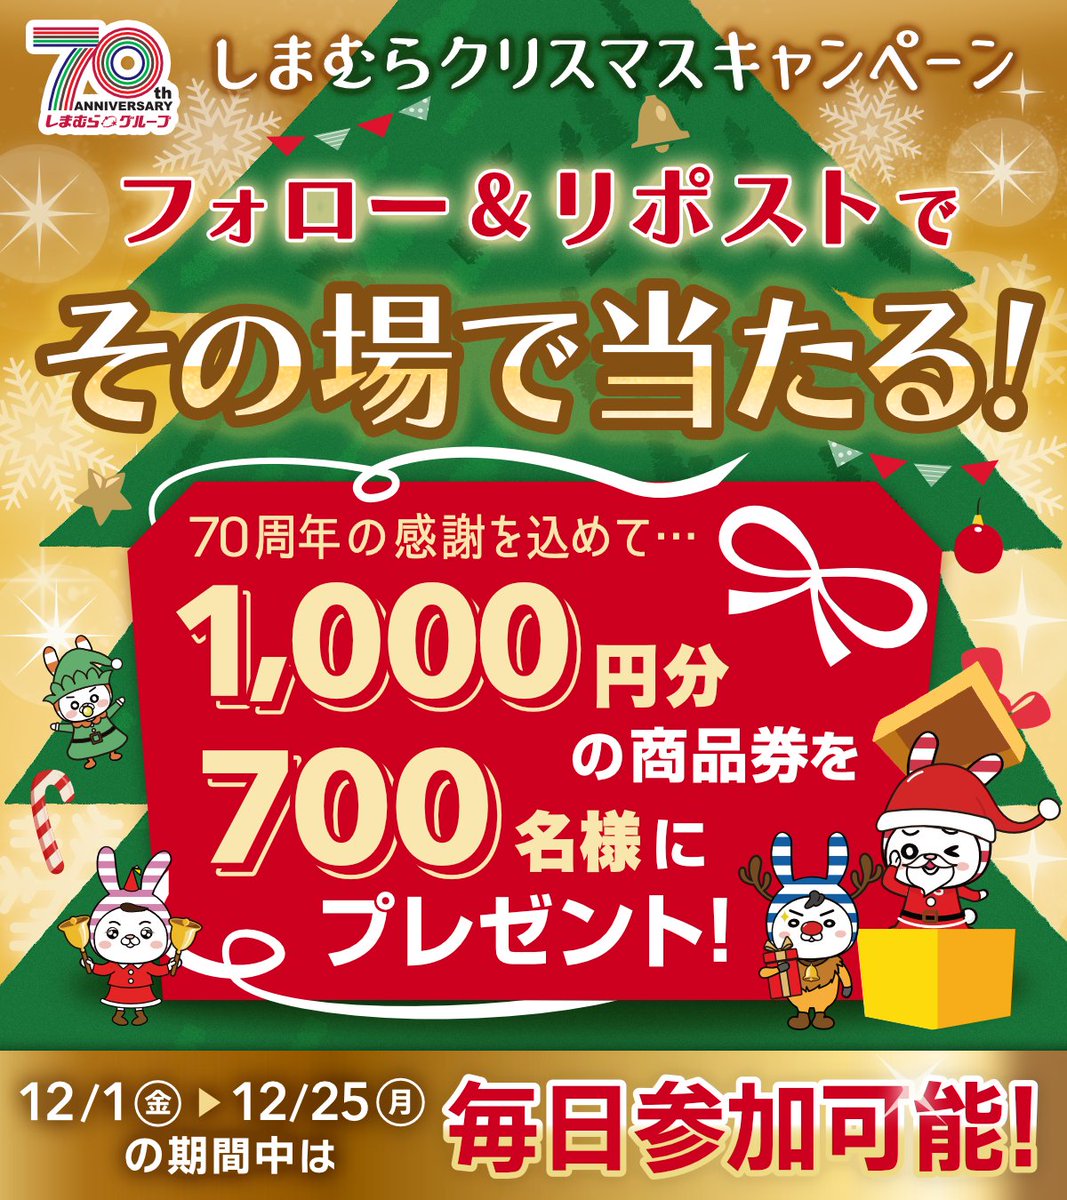 ◤終了まであと3⃣日❗◢ #しまむらクリスマス キャンペーン🎄 グループ共通商品券を700名様にプレゼント🎁 1️⃣@shimamura_grをフォロー 2️⃣この投稿をリポスト リプライから結果を確認🎅 12/25(月)まで ▼今週のチラシ shimamura.gr.jp/shimamura/flie… ▼規約 shimamura.ownly.jp/join/29293 #クリスマスボックス